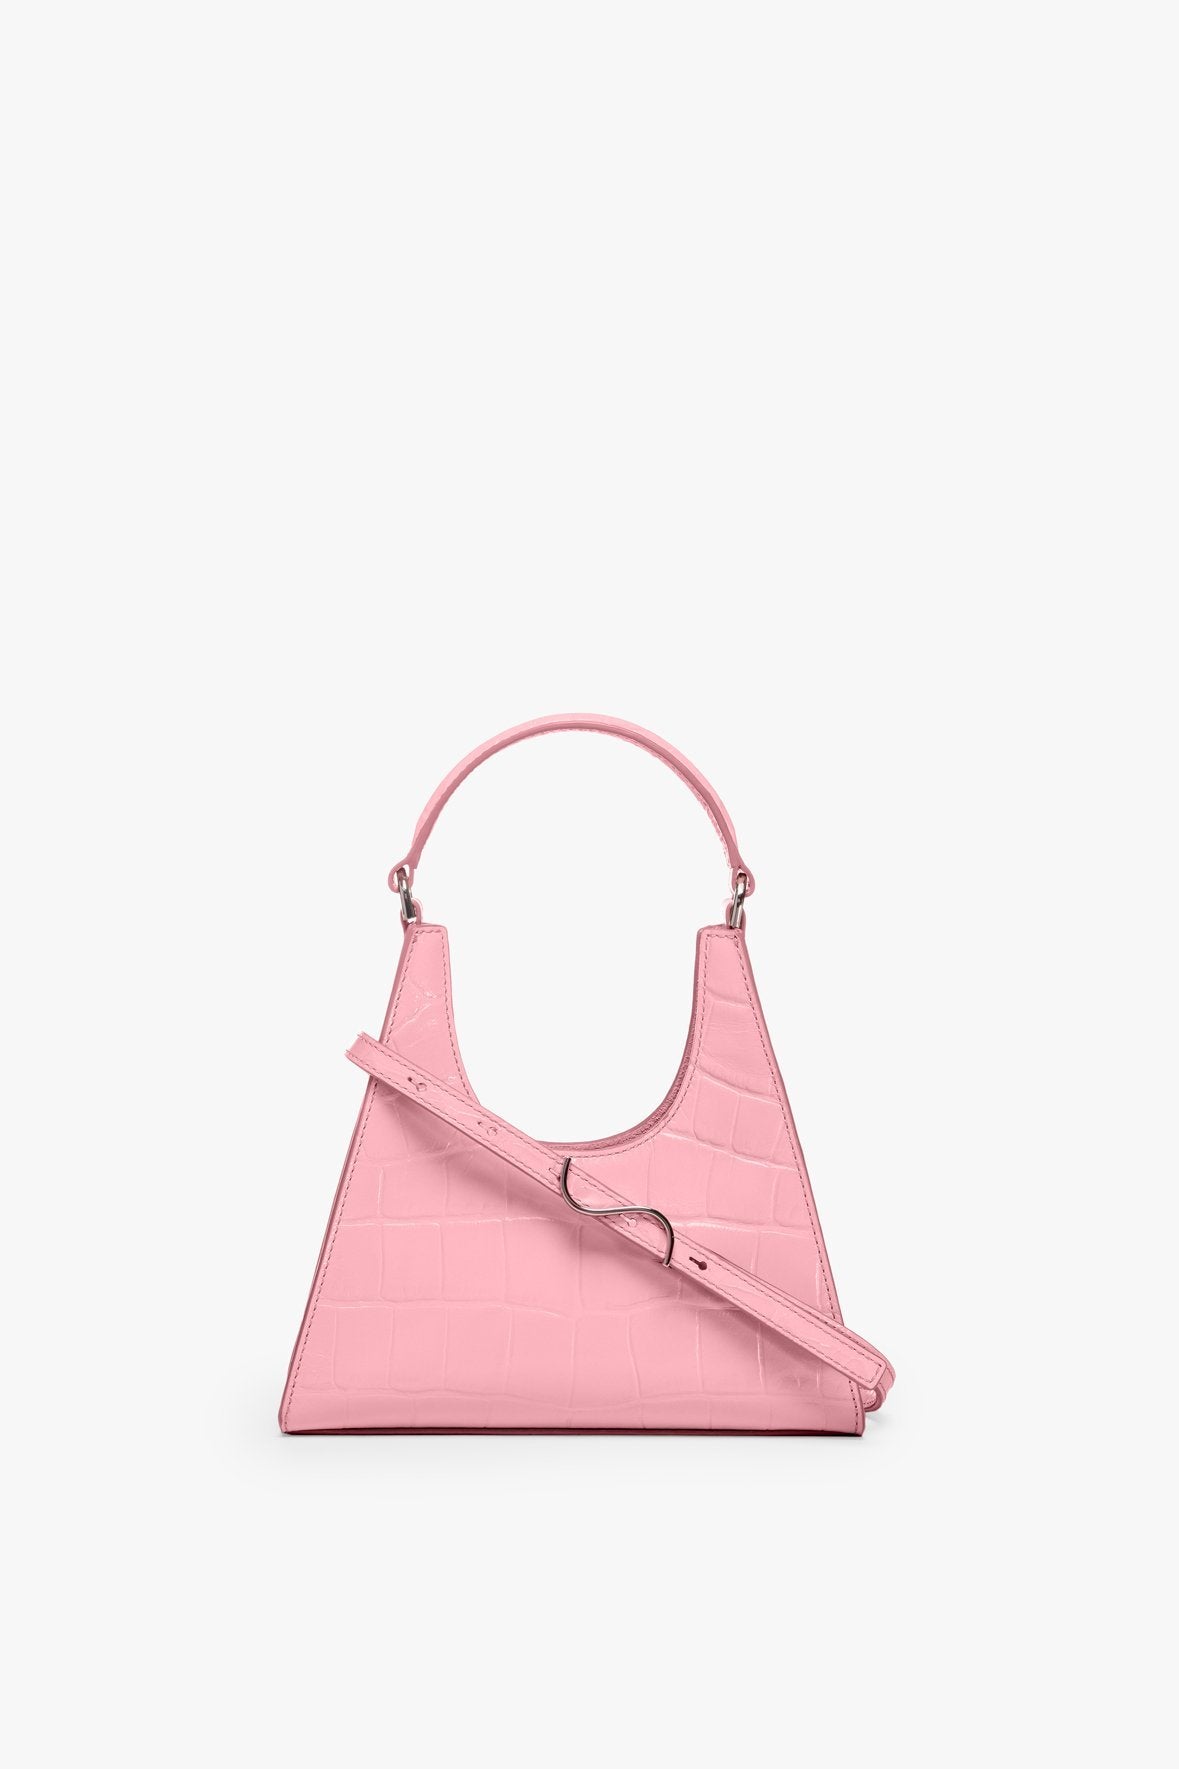 Handbags for Women